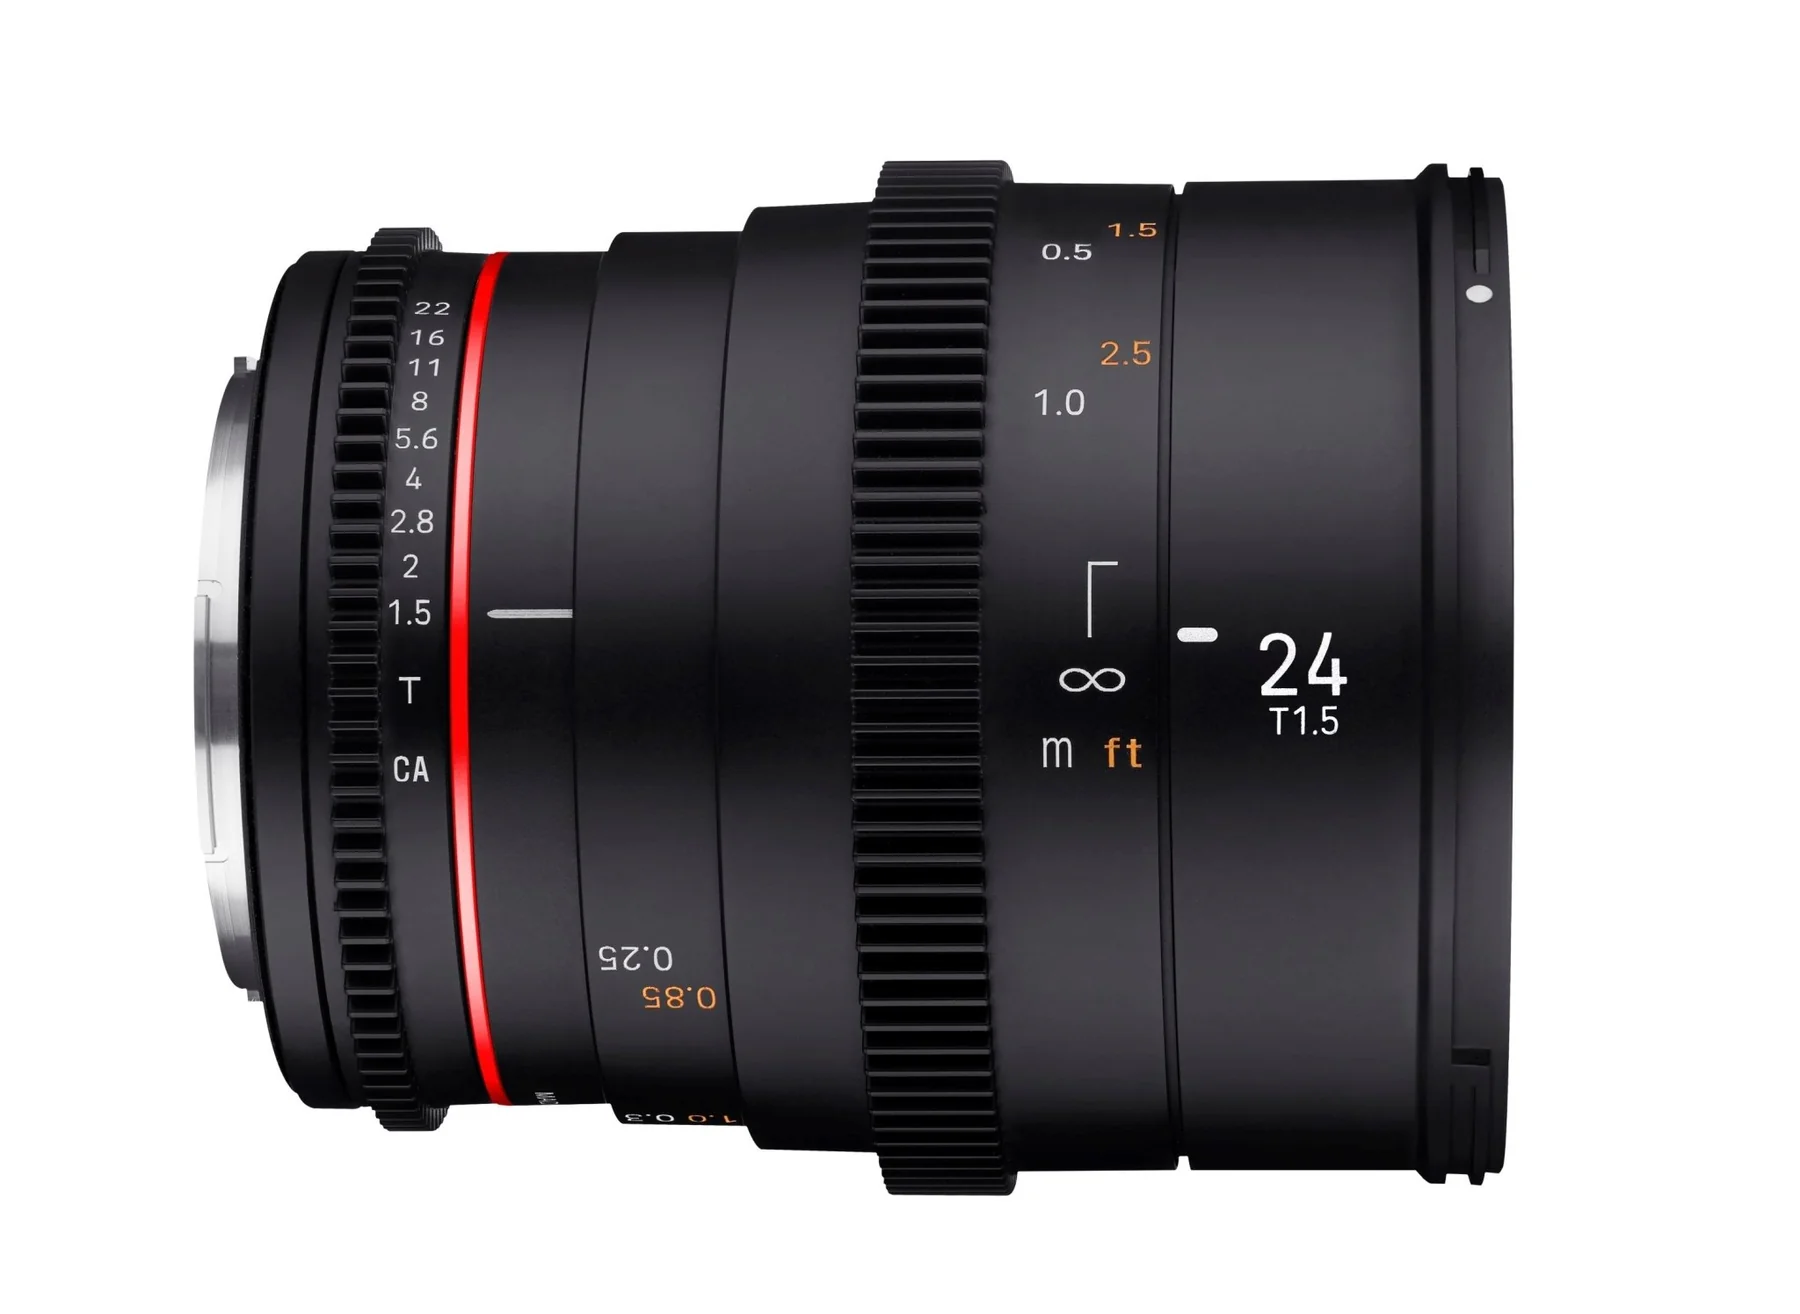 Rokinon 24mm T1.5 Full Frame Wide Angle Cine DSX - Canon EF Lens Mount Camera tek